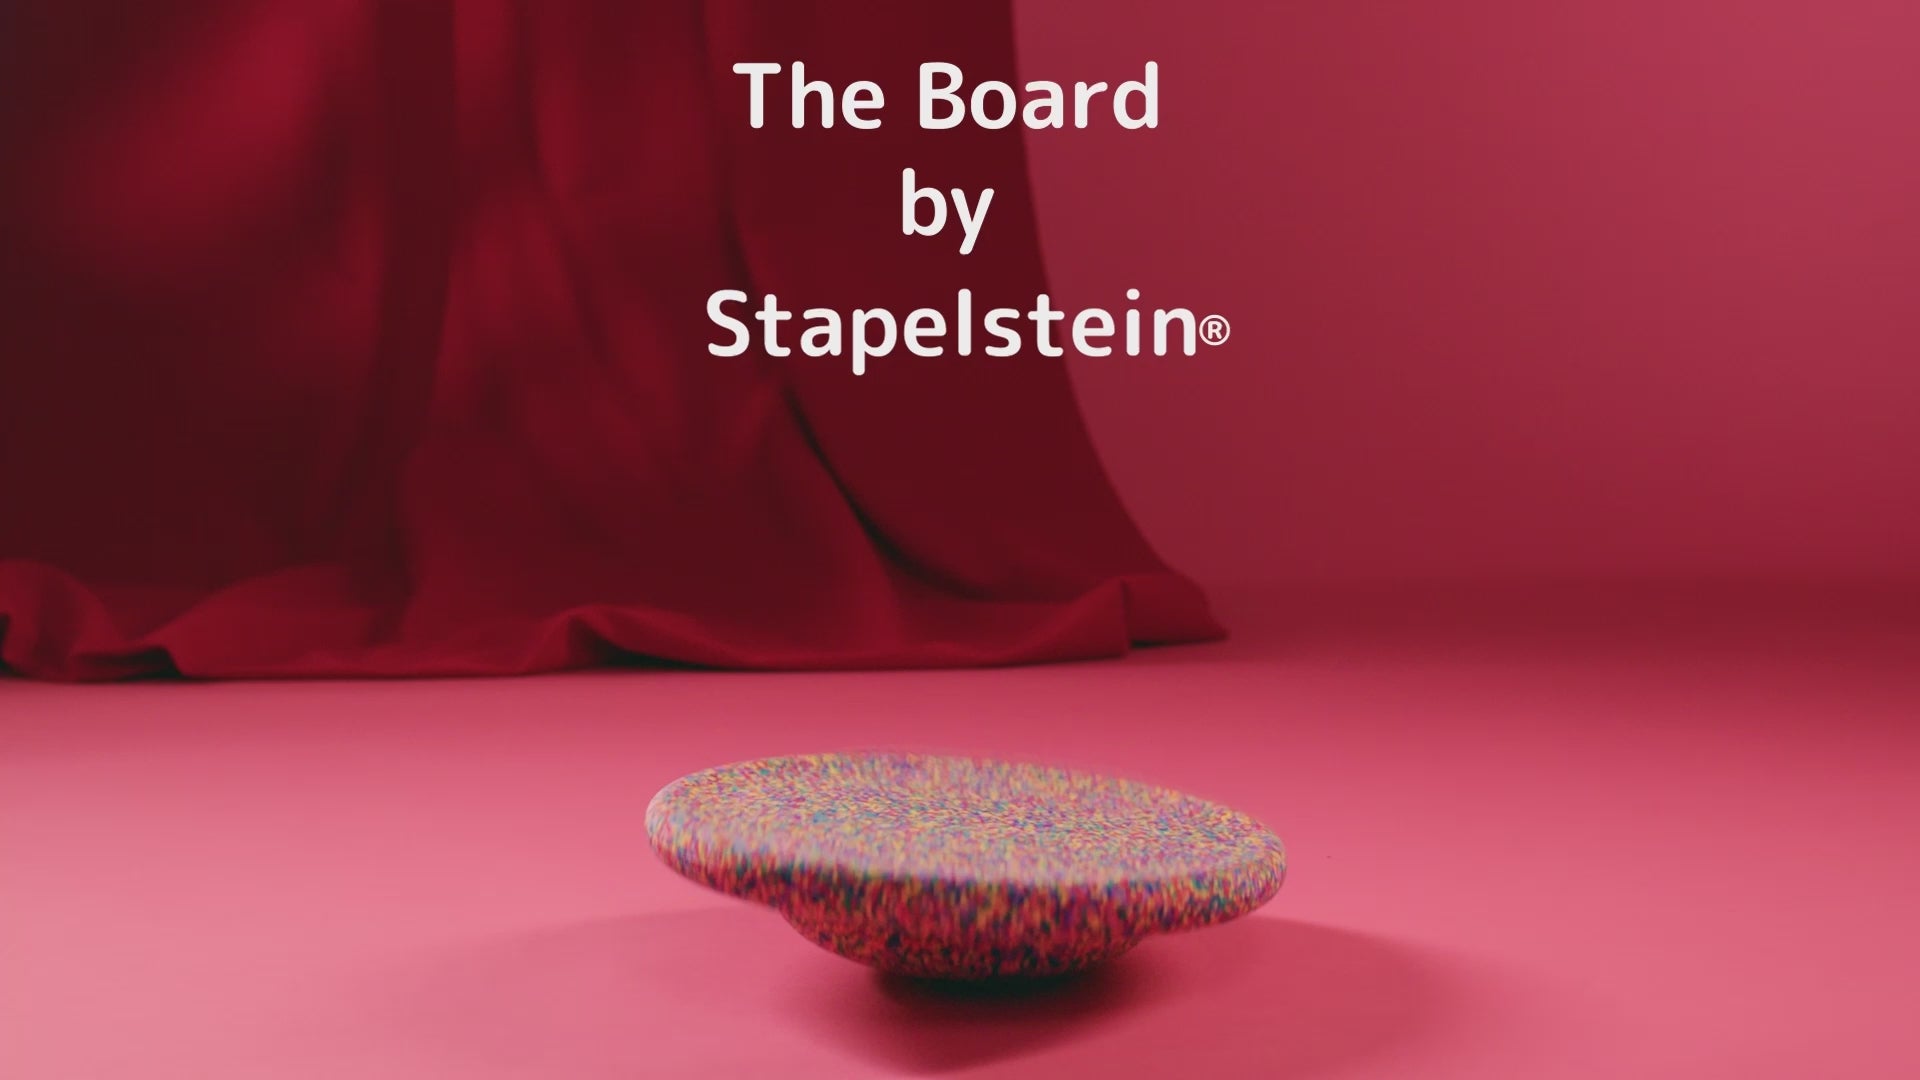 
  
  Stapelstein Balance Board Super Confetti
  
